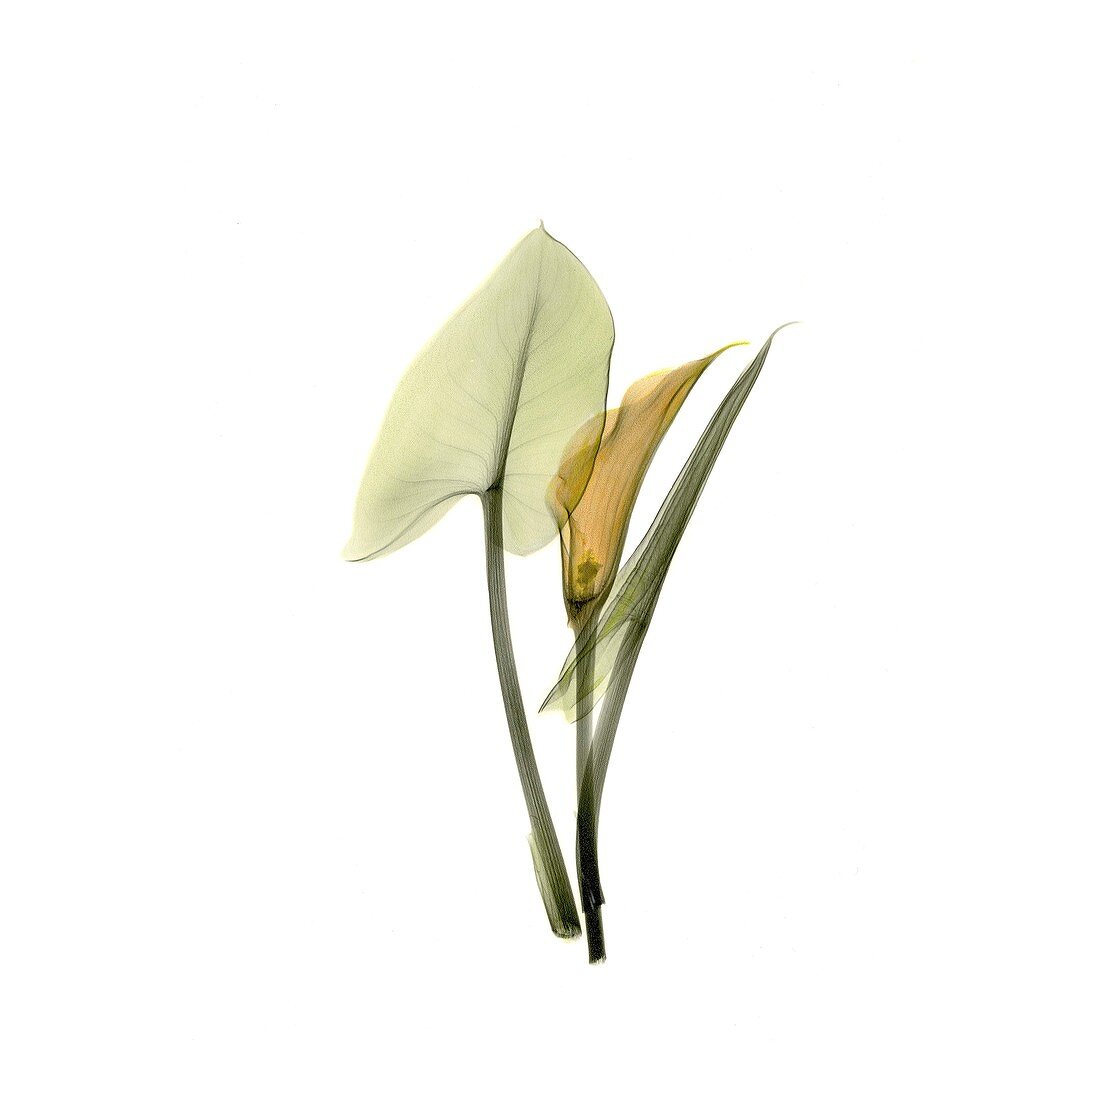 Calla lily (Zantedeschia sp.), X-ray